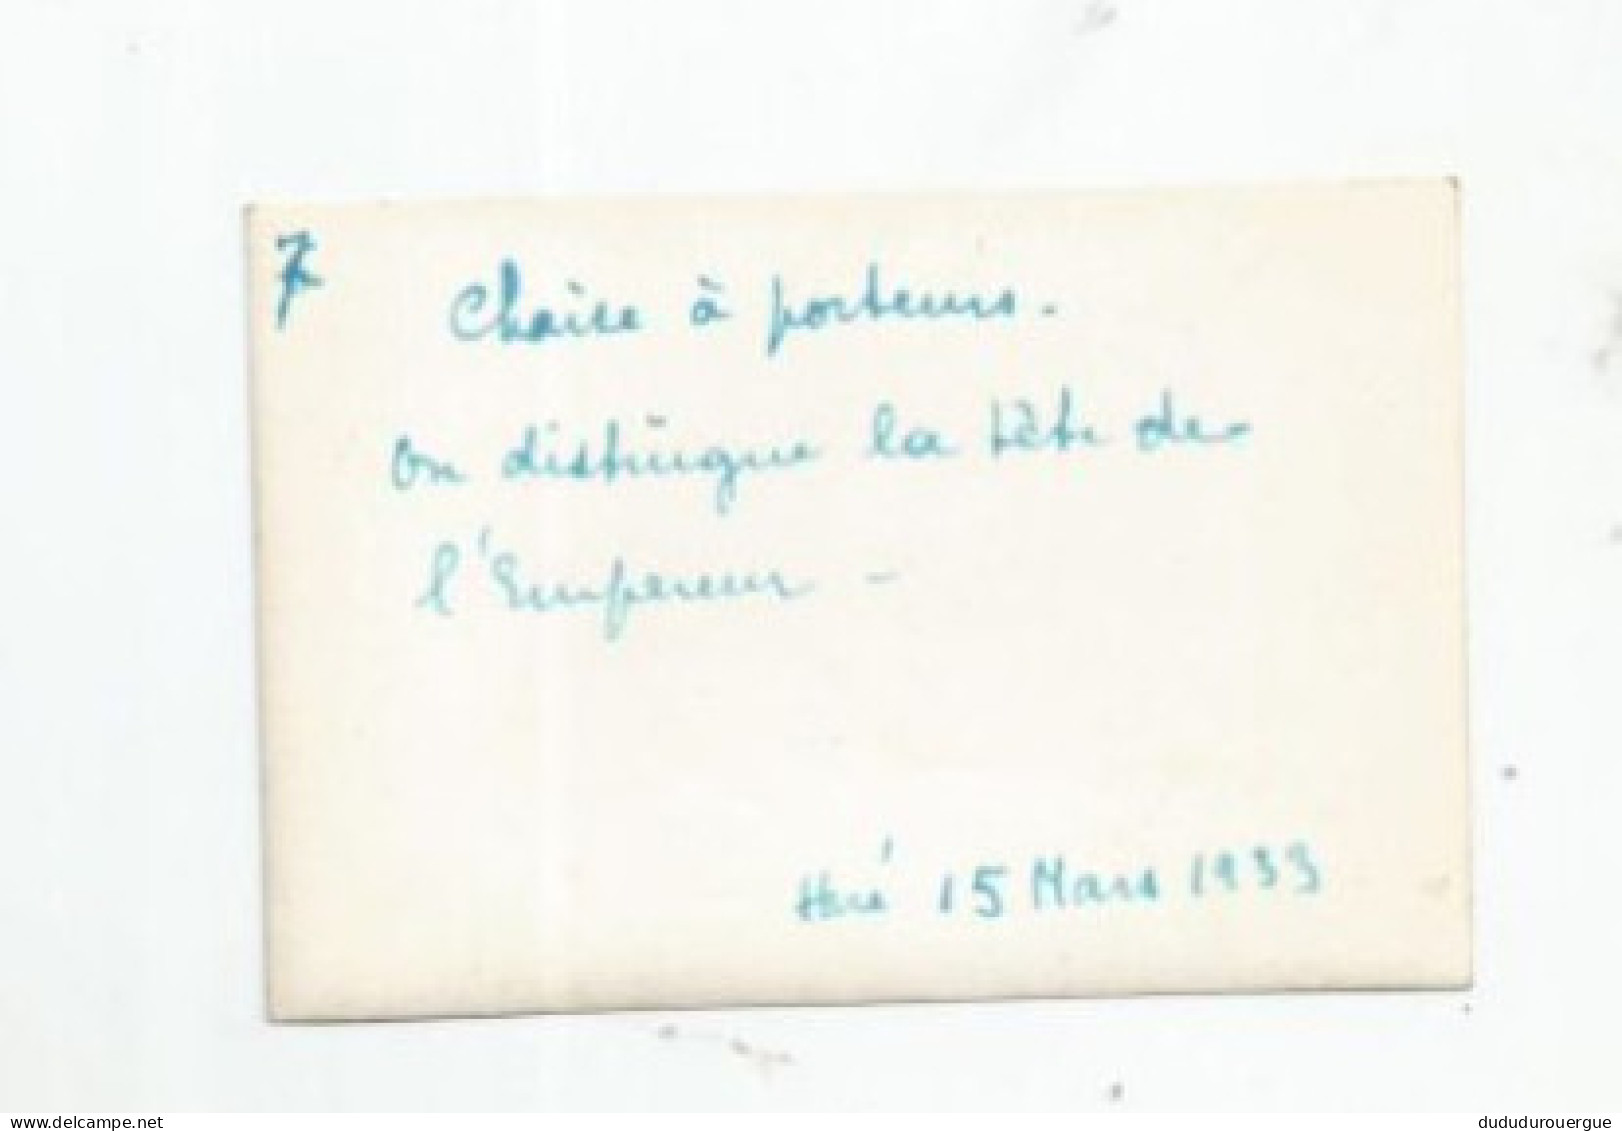 VIETNAM , INDOCHINE , HUE LE 15 MARS 1933 : CHAISE A PORTEURS , ON DISTINGUE LA TETE DE L EMPEREUR - Asia